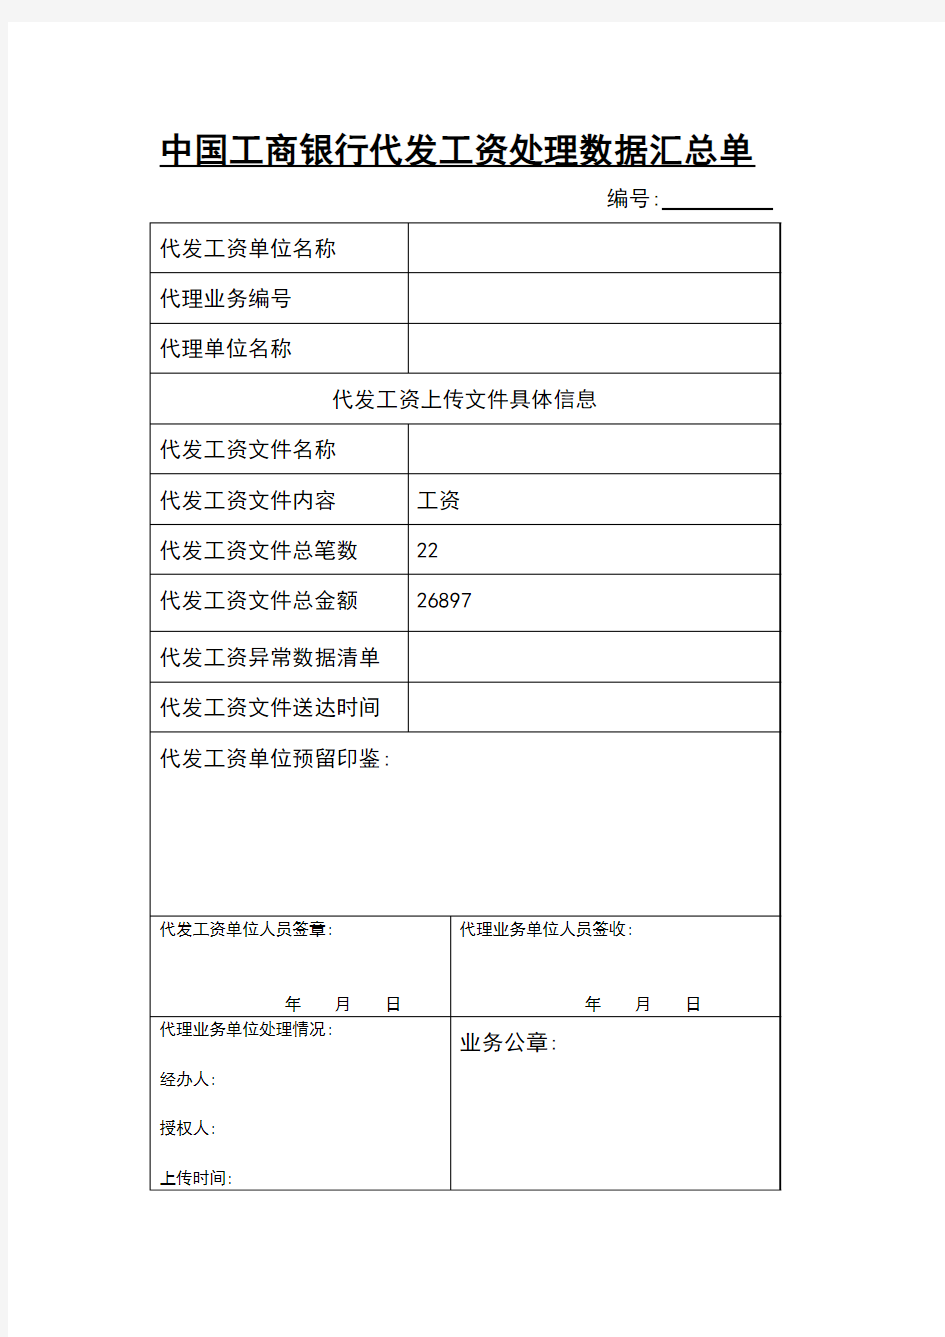 中国工商银行代发工资处理数据汇总单1-2月